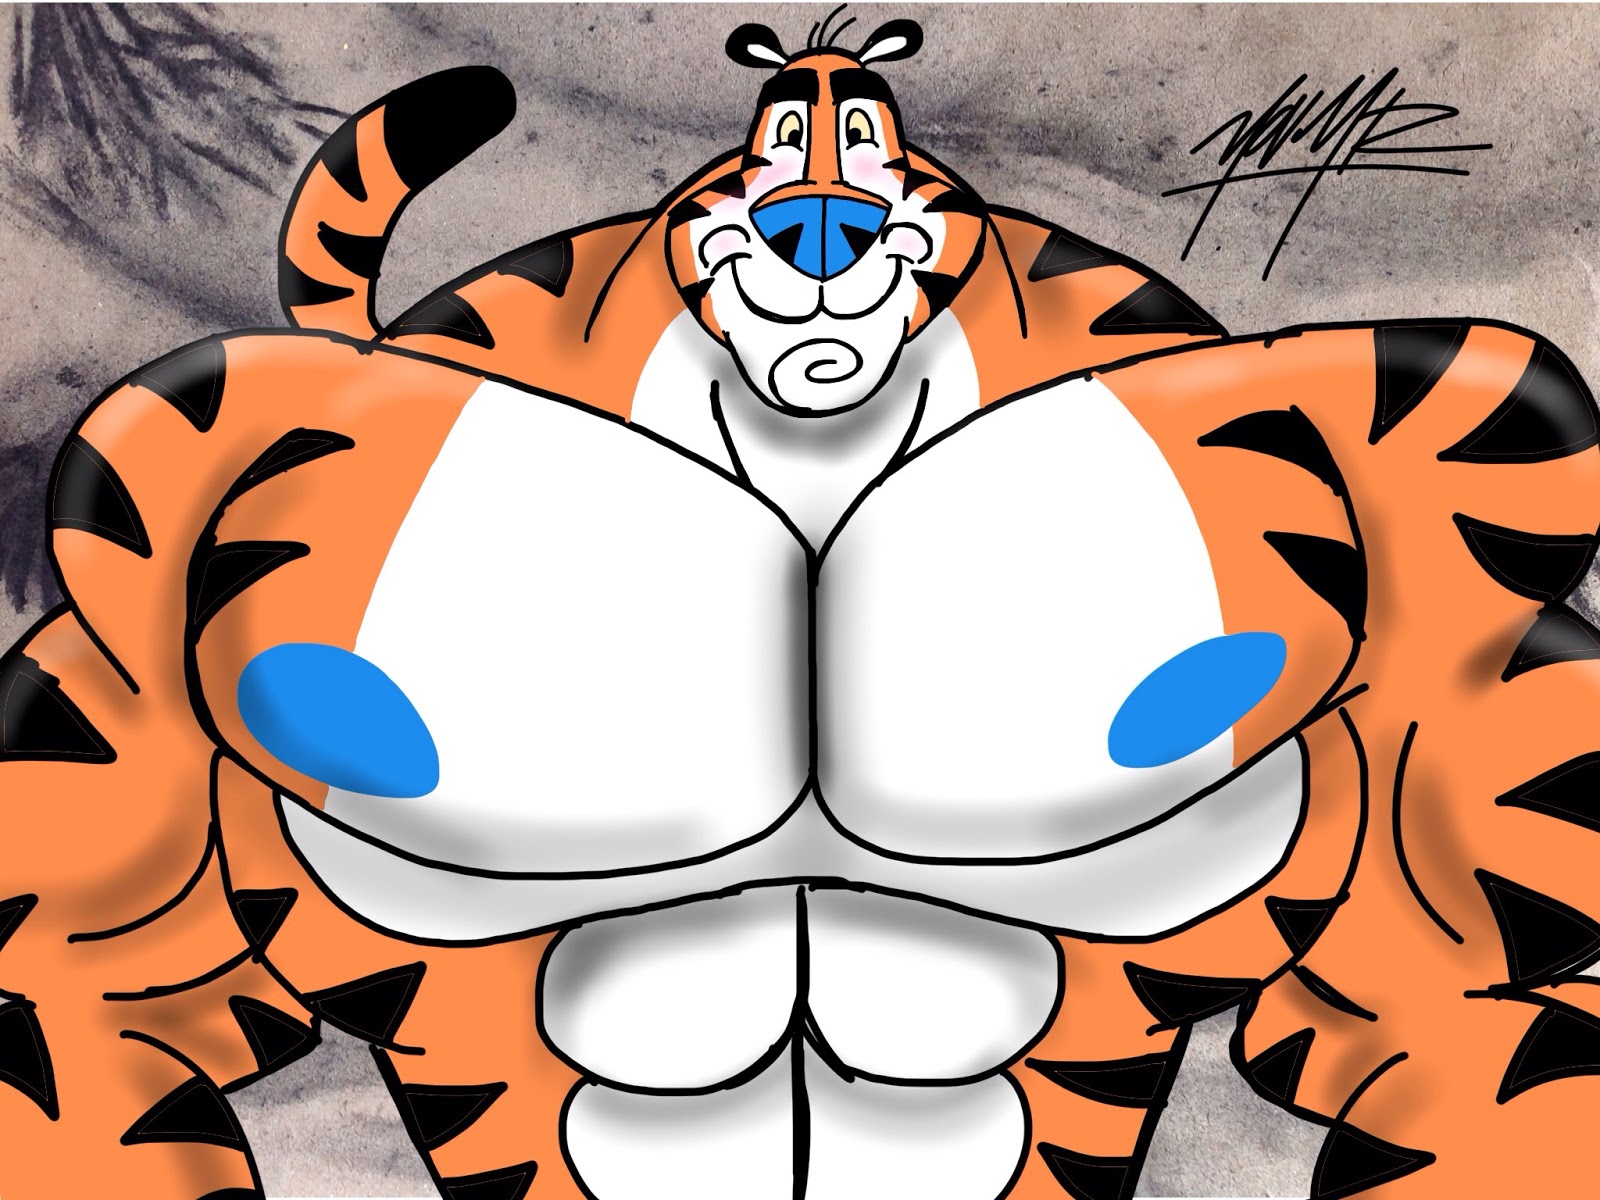 Tony the tiger.